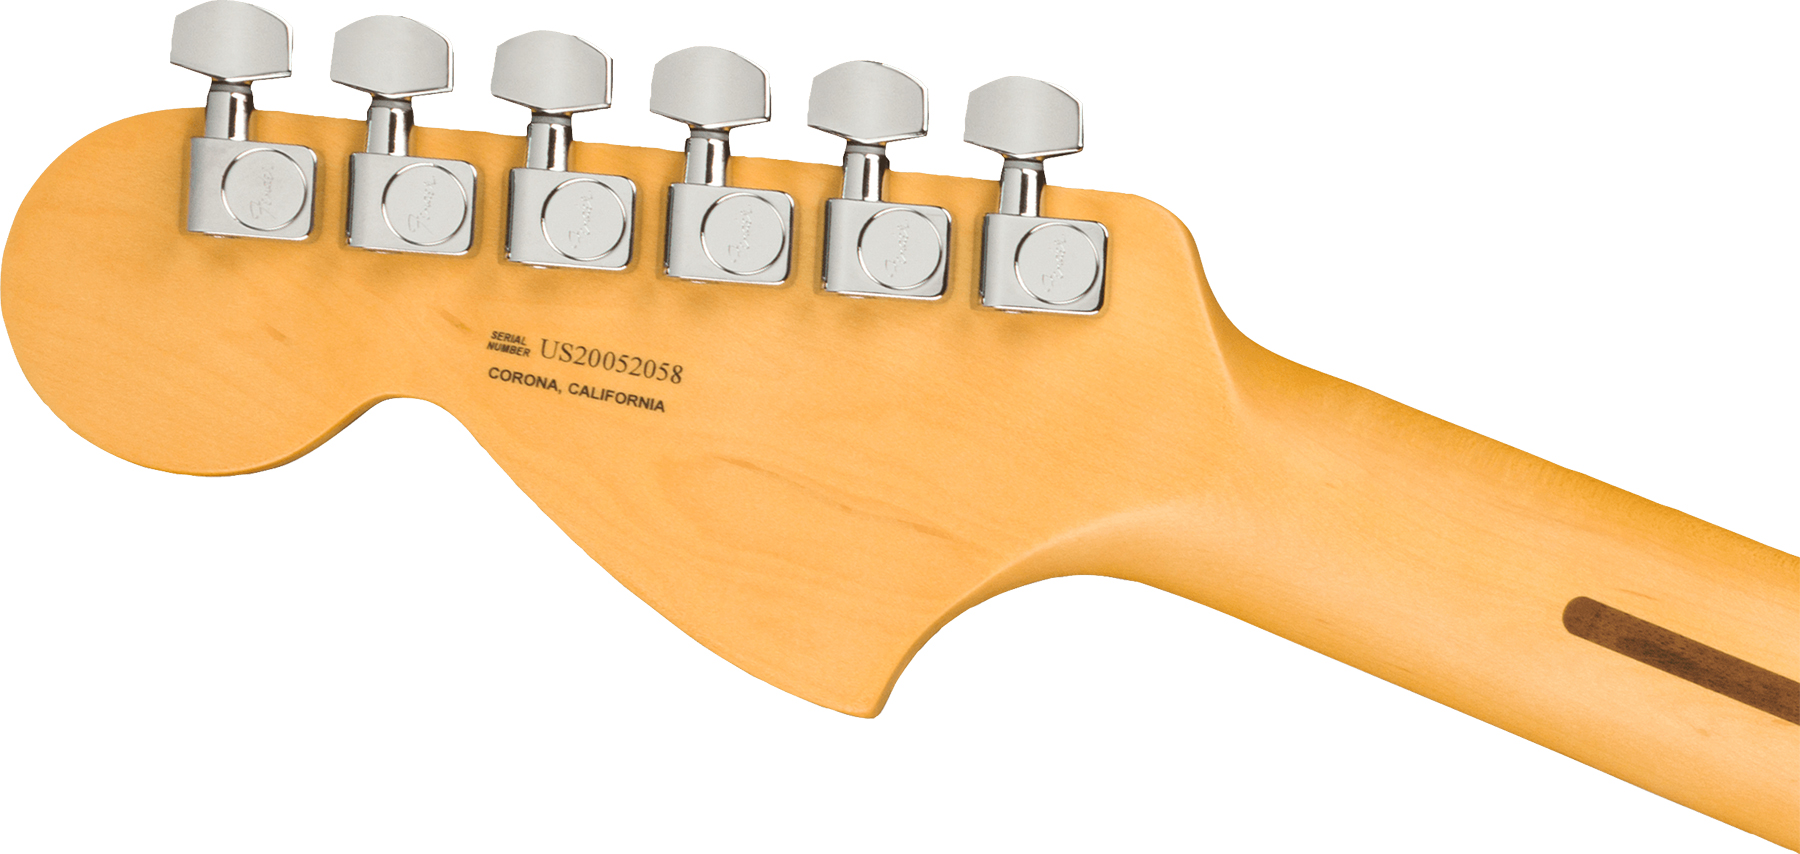 Fender Tele Deluxe American Professional Ii Usa Rw - Mercury - Guitarra eléctrica con forma de tel - Variation 1